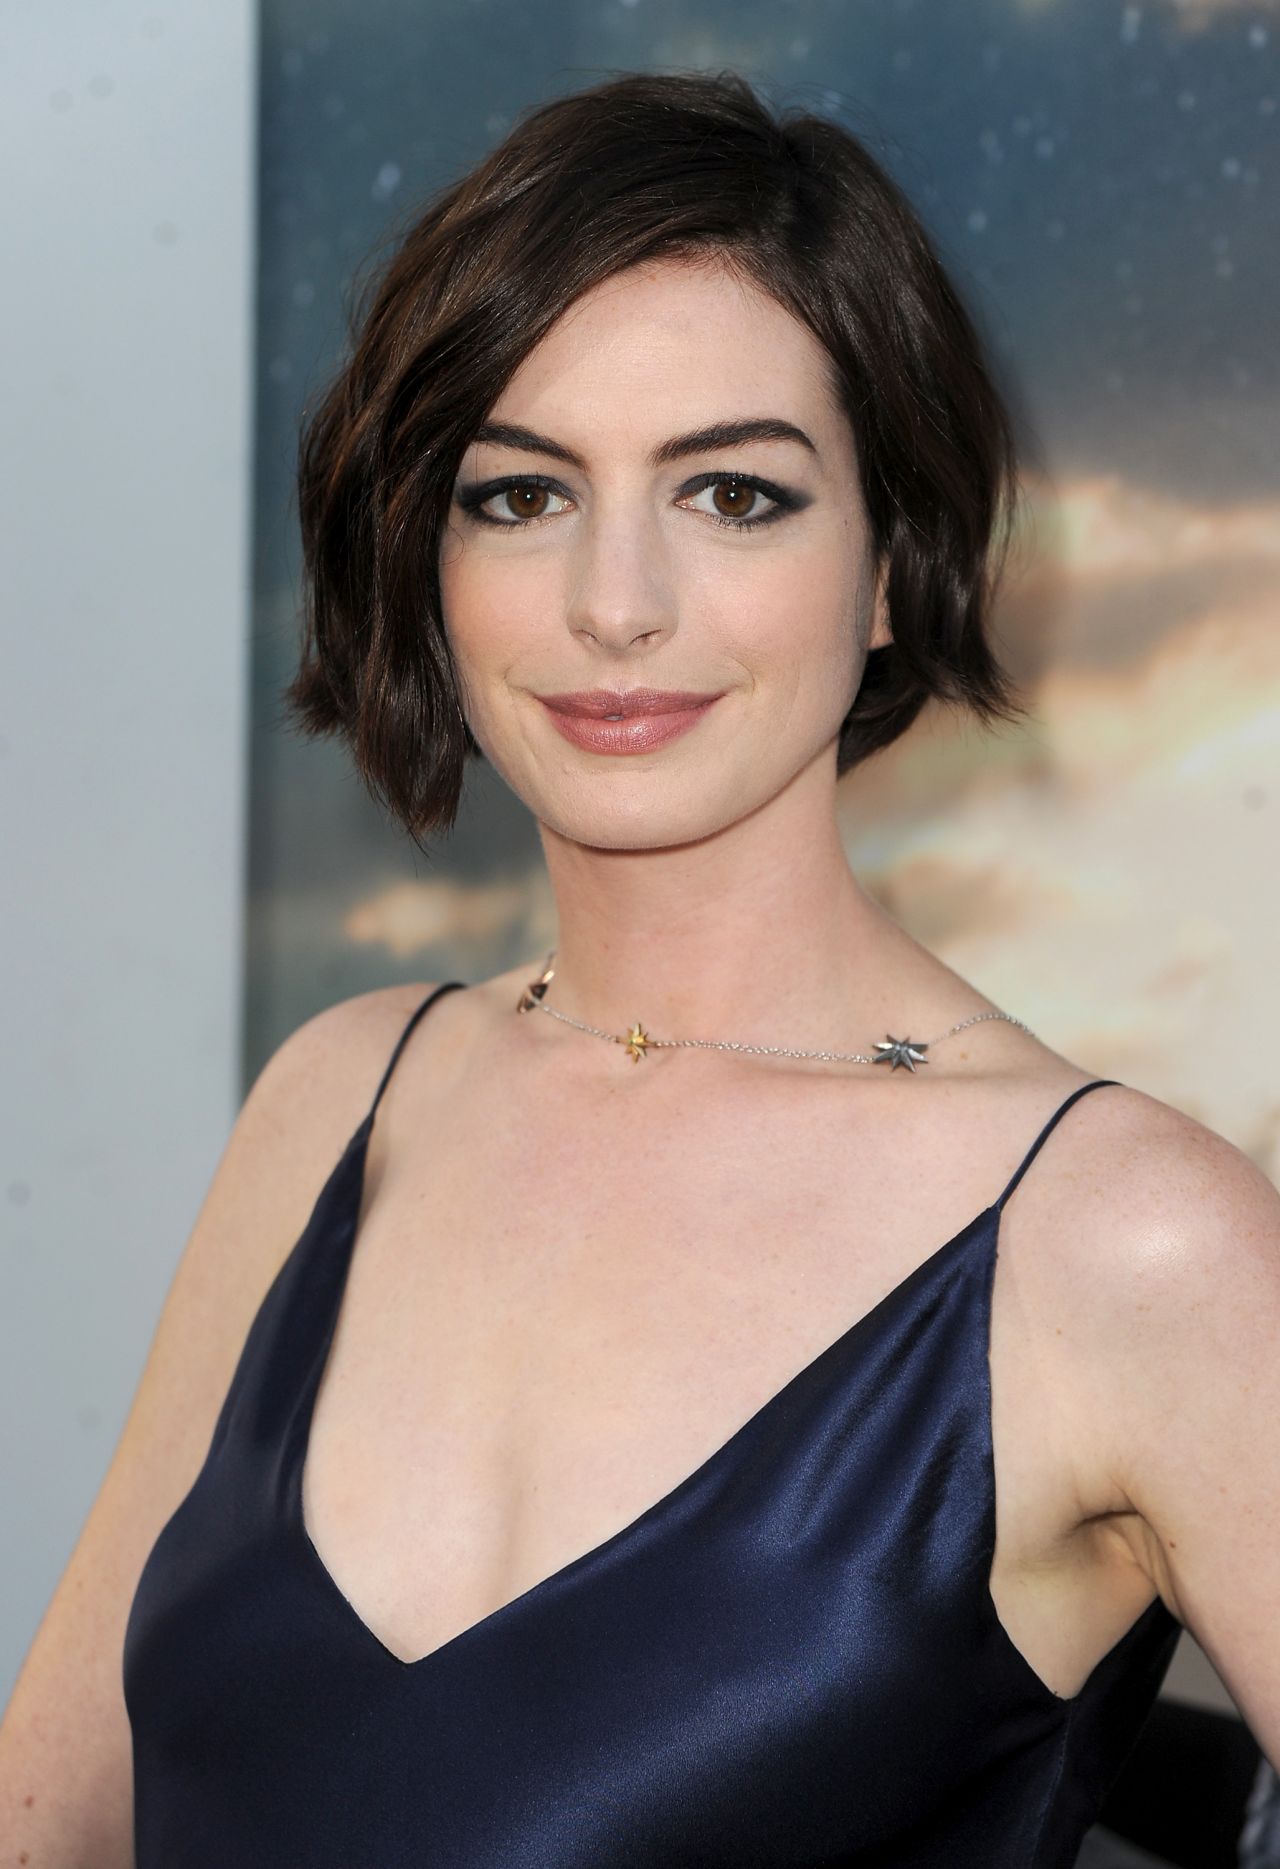 INTERSTELLAR Premiere in Hollywood - Anne Hathaway